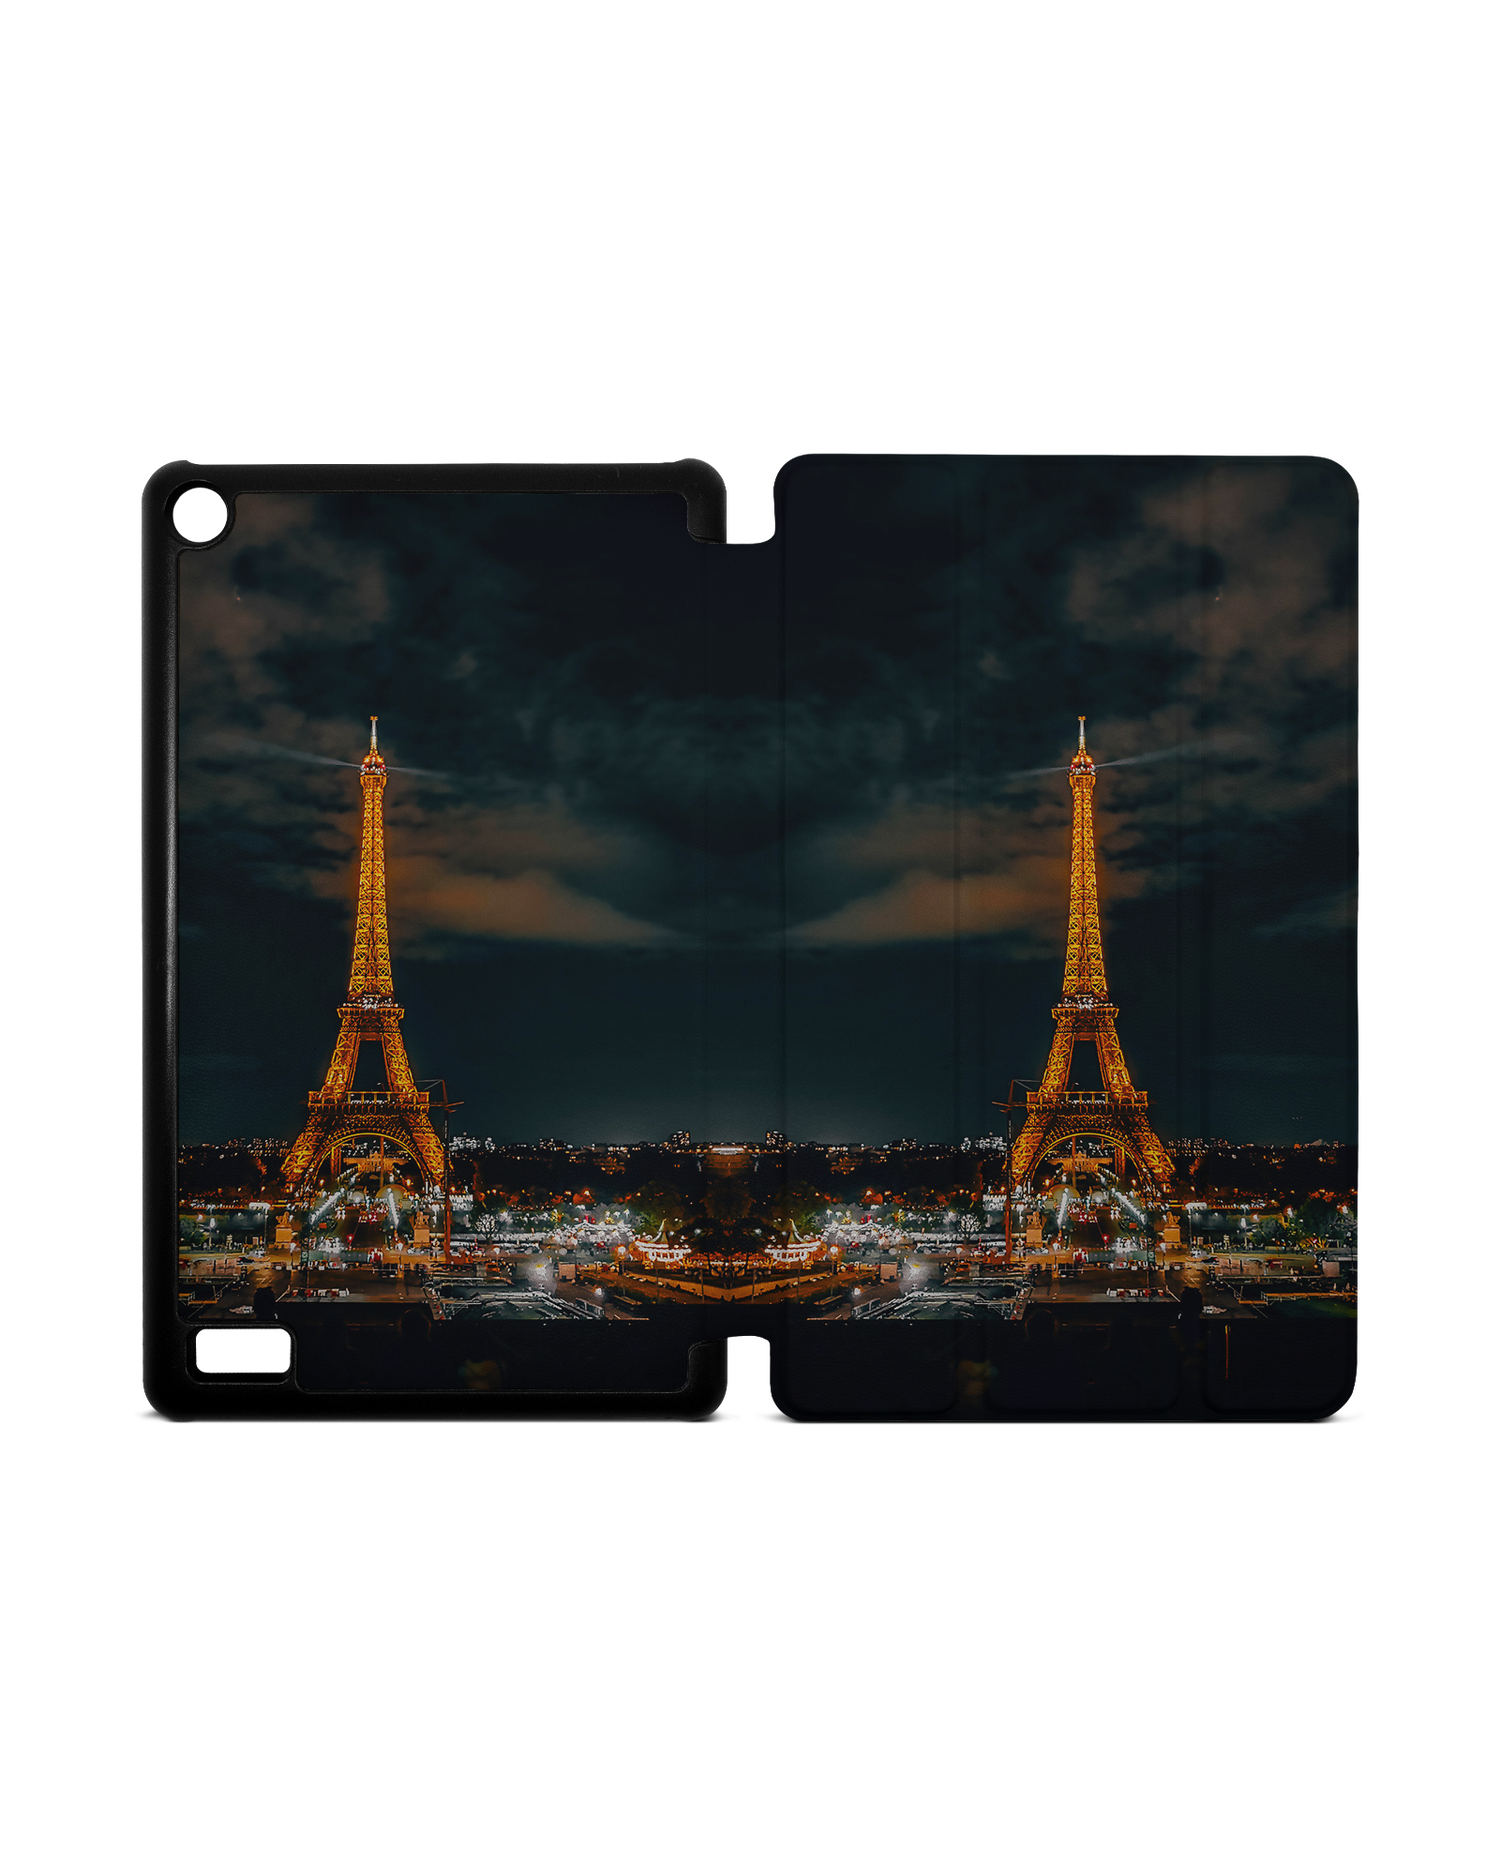 Eiffel Tower By Night Tablet Smart Case für Amazon Fire 7: Aufgeklappt